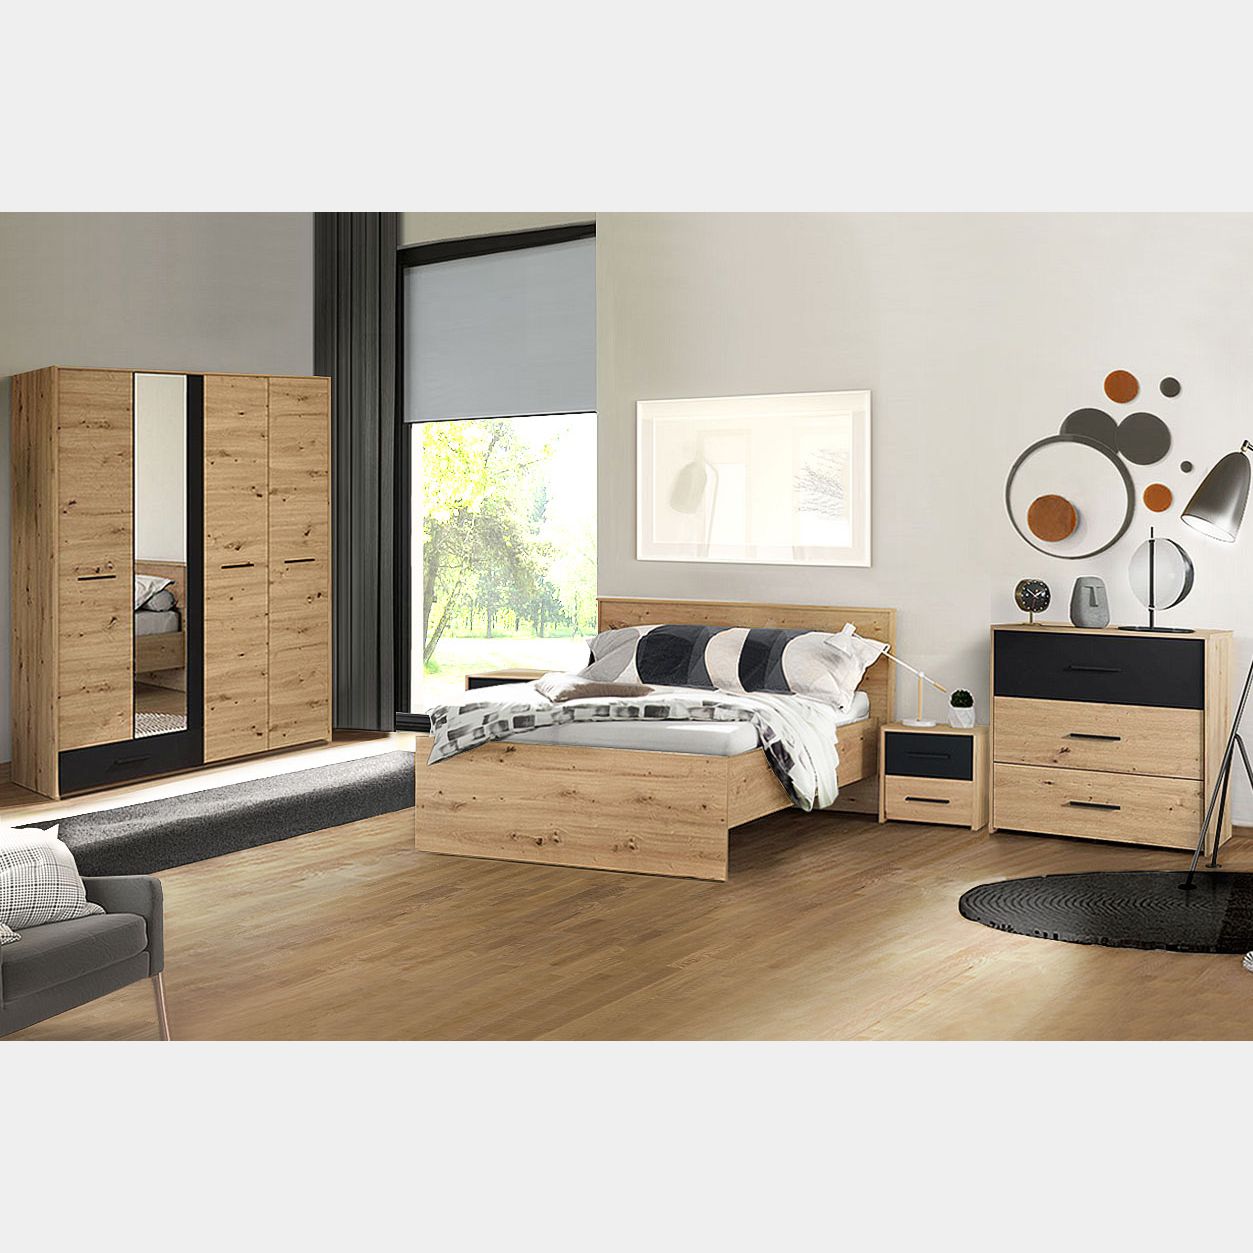 Cassettiera soggiorno camera da letto mobile comodino design moderno  mobiletto - Shopping.com